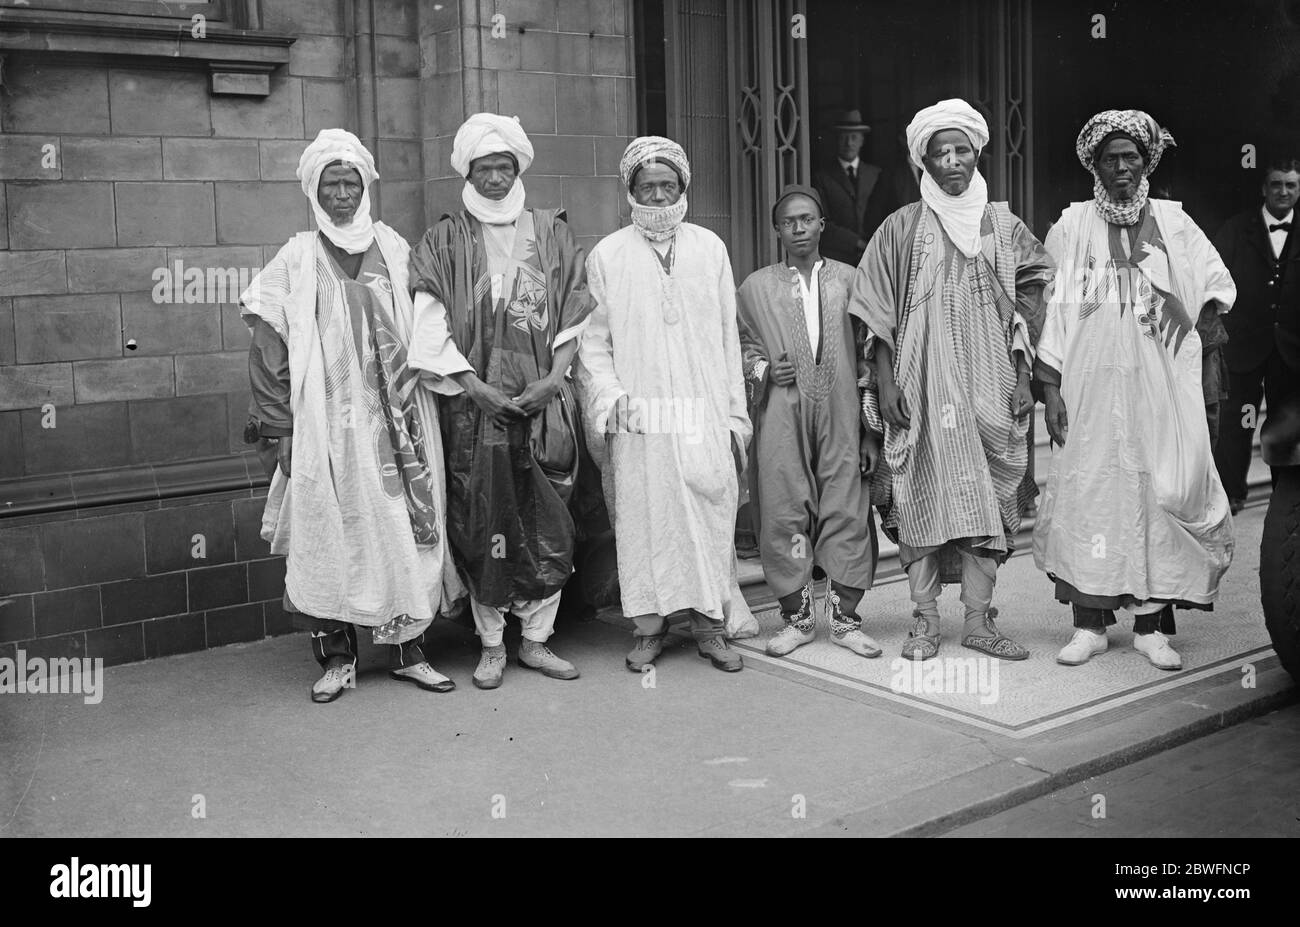 Nigerianischer Prinz in London der Emir Katsina, einer der regierenden Fürsten von Nigeria, ist in London angekommen, um die Empire-Ausstellung in Wembley mit seiner Frau und Sohn der Emir und seinem Sohn (in der Mitte) zu besuchen Mit seiner Suite vor ihrem Hotel in London fotografiert 13 September 1924 Stockfoto